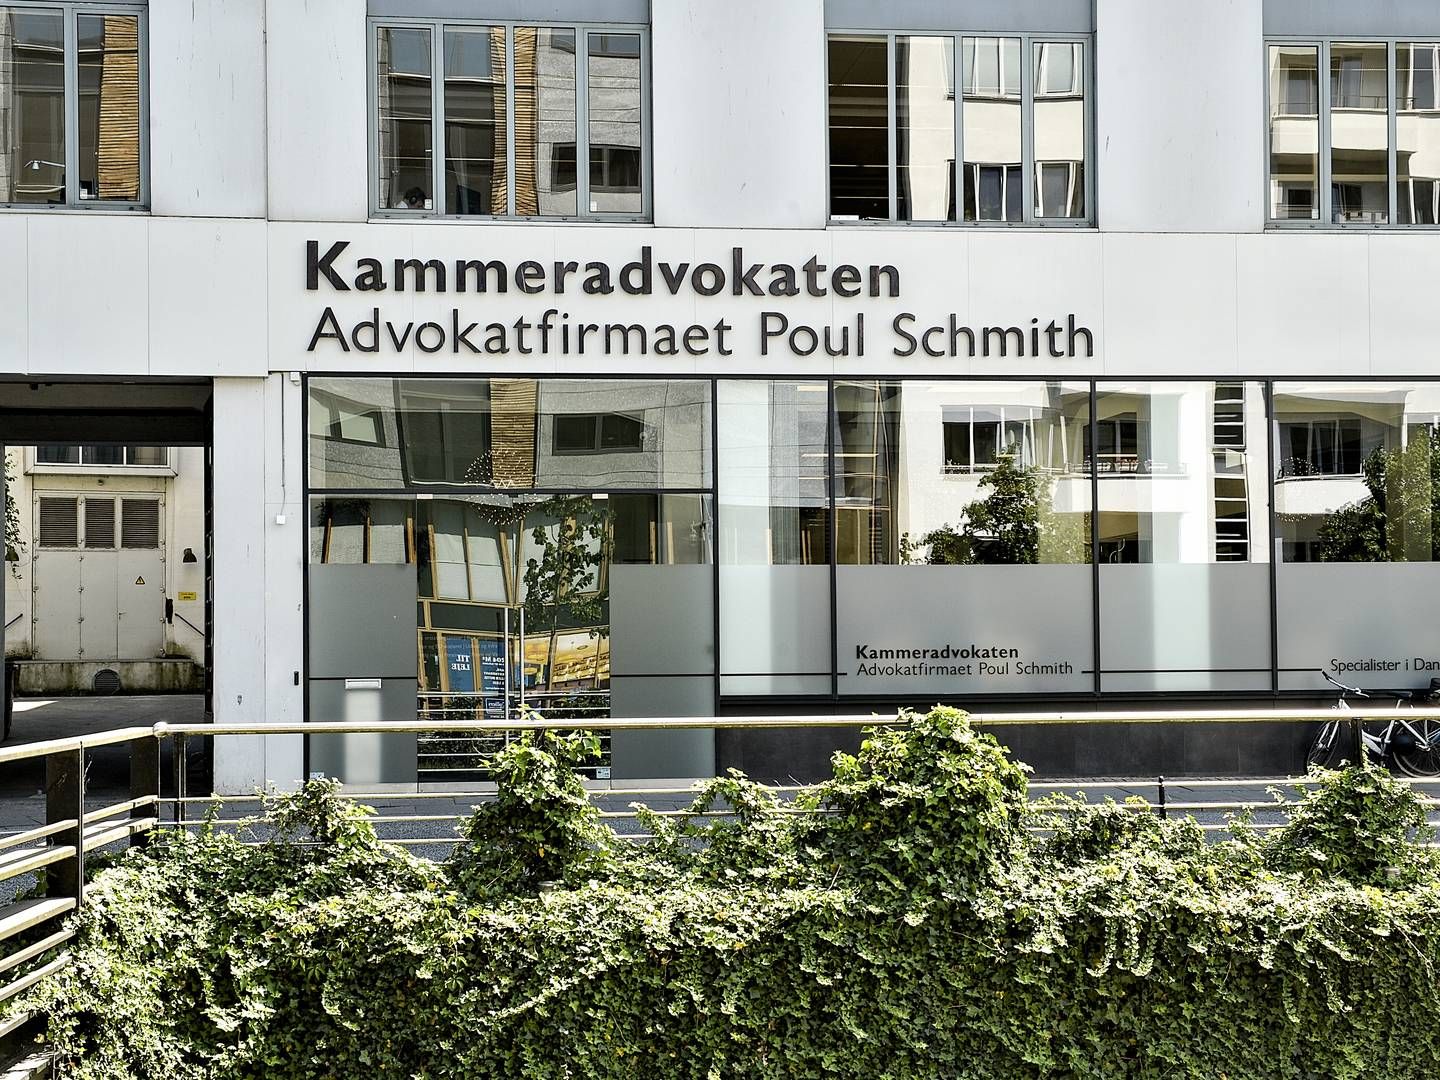 Konkurrencerådet anbefaler at øge konkurrencen om statens advokatopgaver, som Advokatfirmaet Poul Schmith sidder tungt på i kraft af sin rolle som kammeradvokat. | Foto: Ernst van Norde